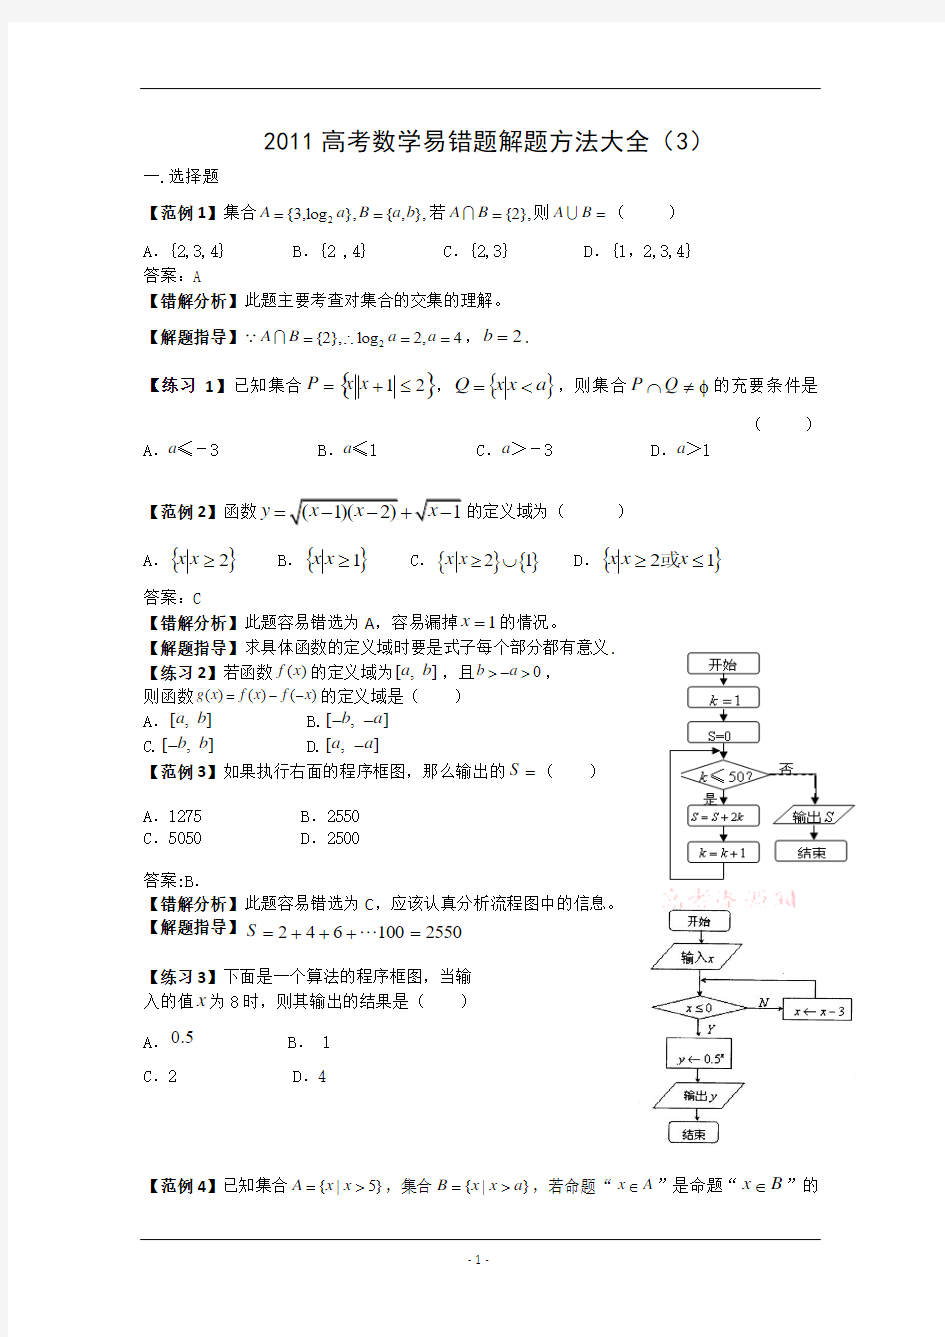 2011高考数学易错题解题方法大全(3)